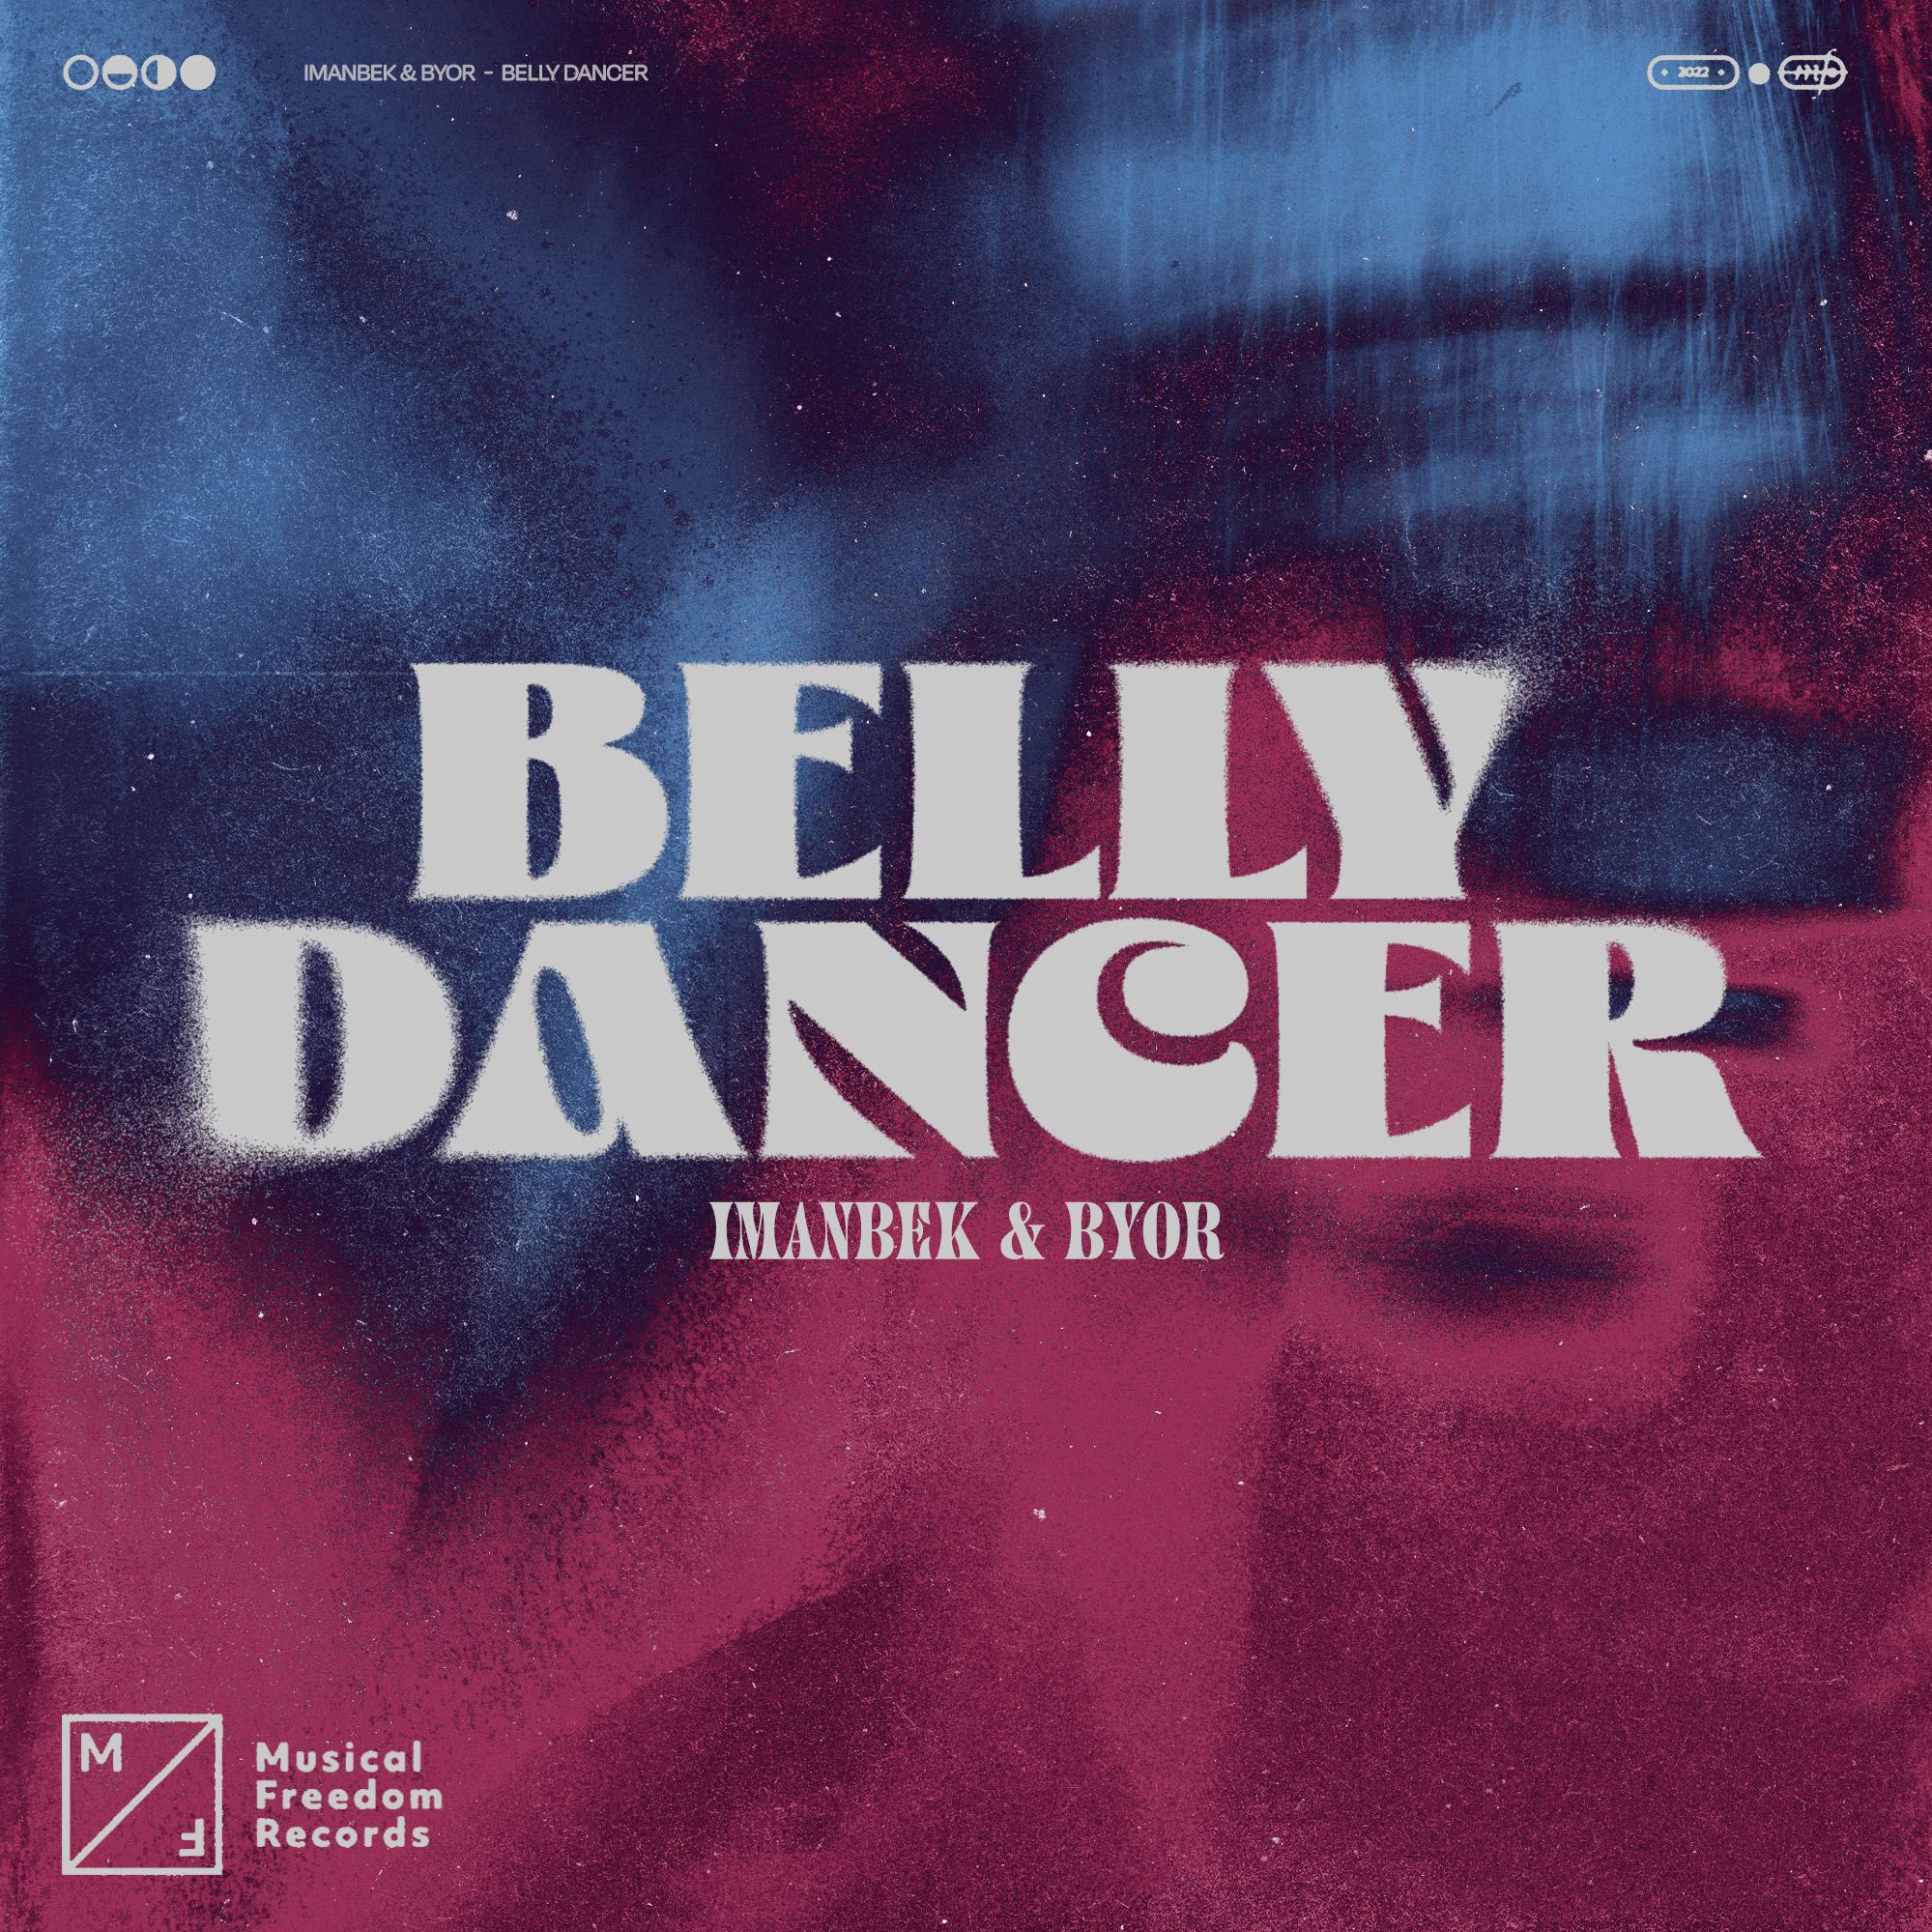 Télécharger Imanbek & BYOR - Belly Dancer